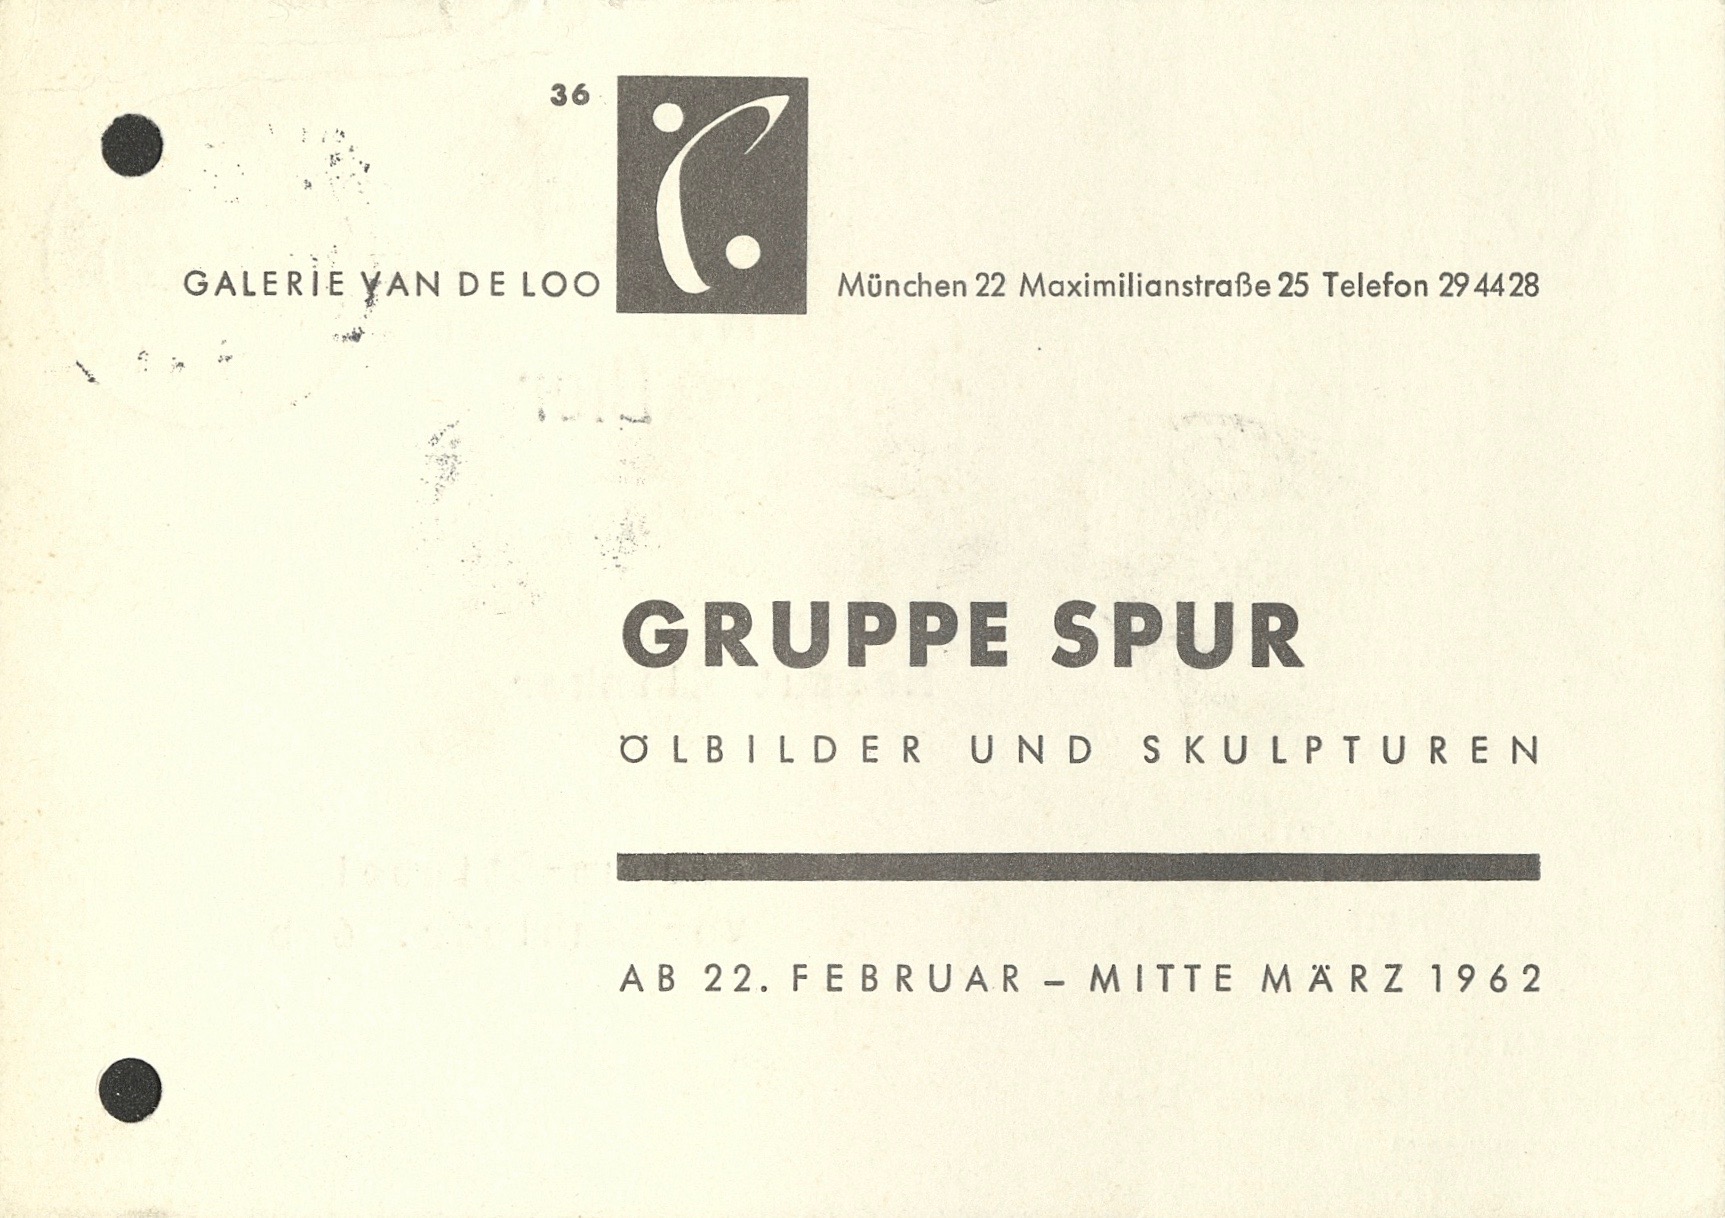 GRUPPE SPUR, Galerie van den Loo, Munich 1962 (Invitation); Archiv der Avantgarden, Staatliche Kunstsammlungen Dresden